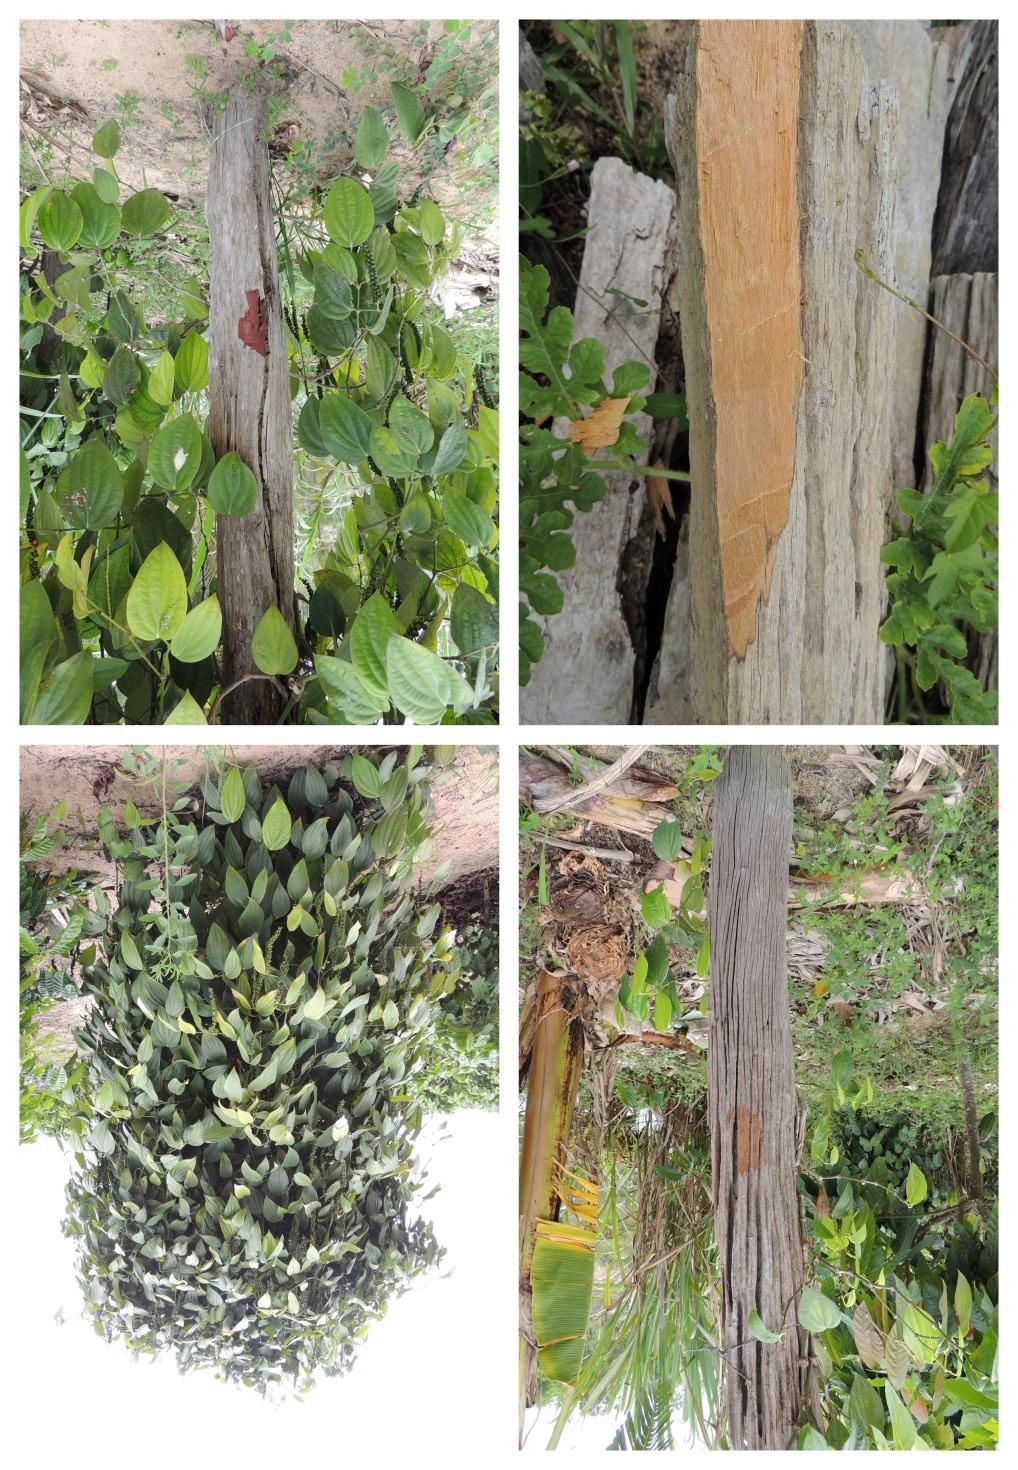 Uso de espécies arbóreas nativas para a propriedade rural e mercado regional na região de Sooretama, ES 13 da madeira, como móveis, tutoramento de pimenta-doreino, paletes e embalagens (ESPIRÍTO